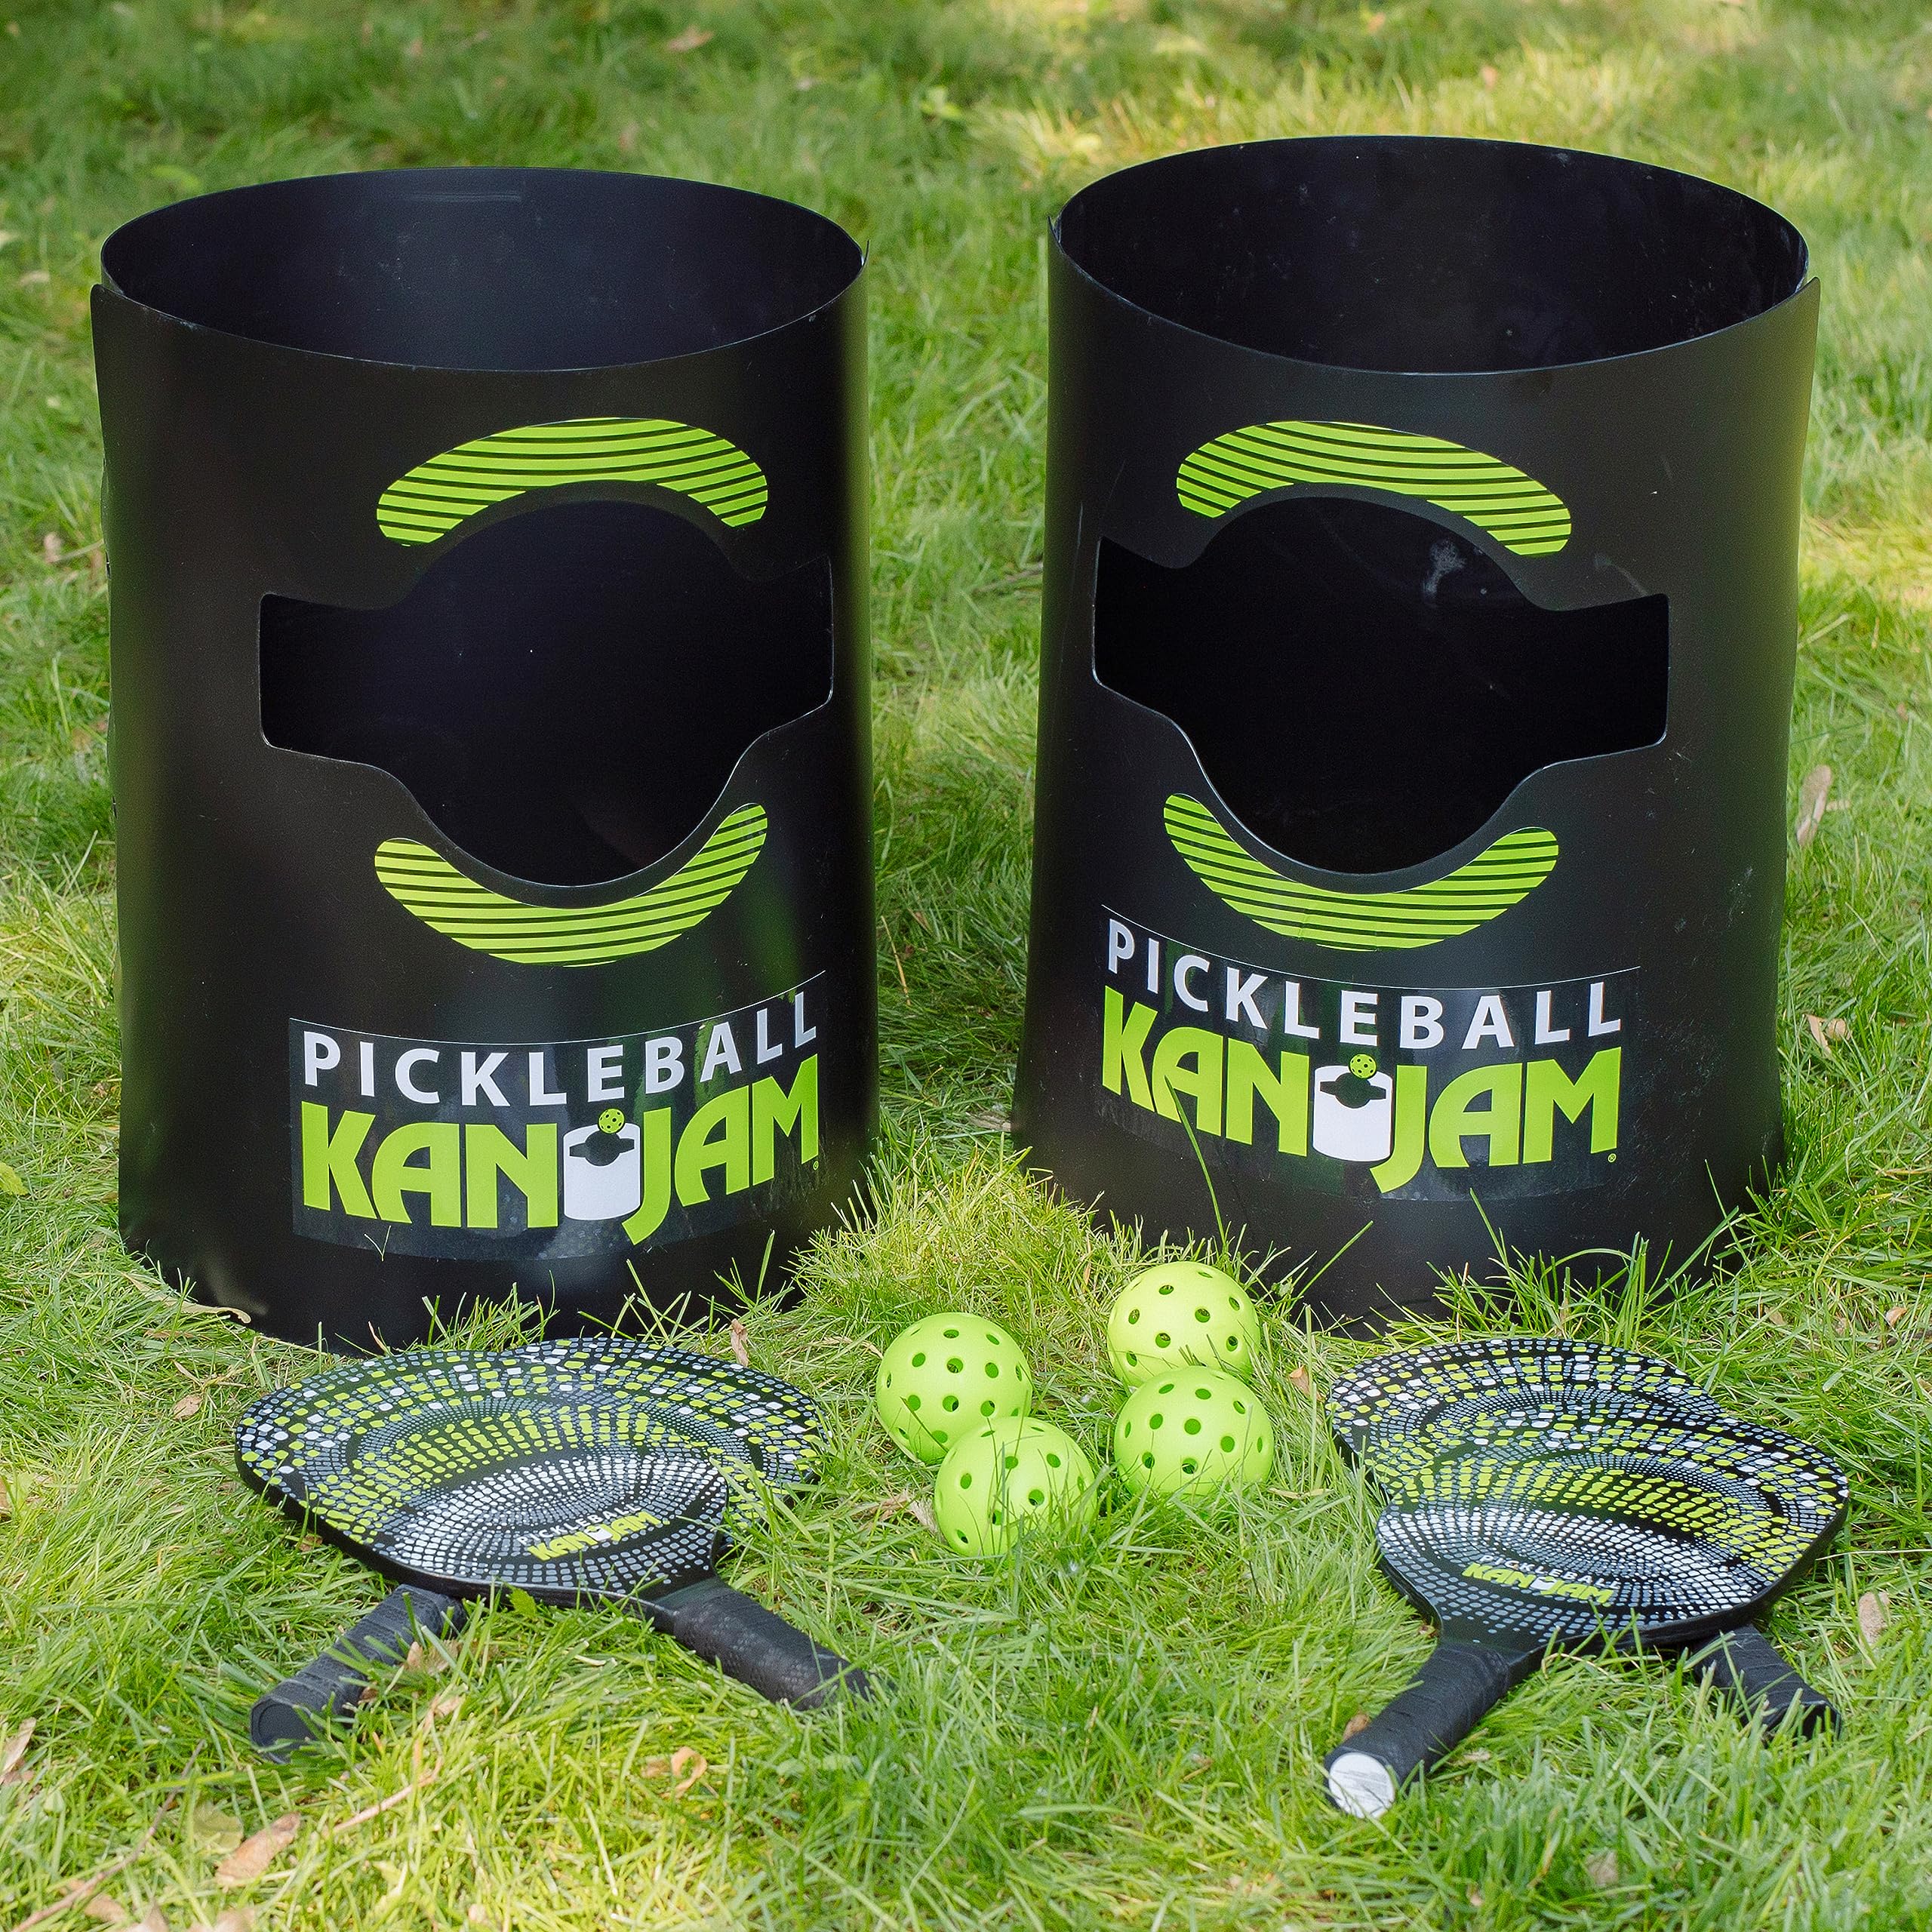 Kan Jam Pickleball - Play Pickleball Anywhere - Team Based Pickle Ball Game - Includes 4 Pickleball Paddles & 4 Pickleballs,Black/Green